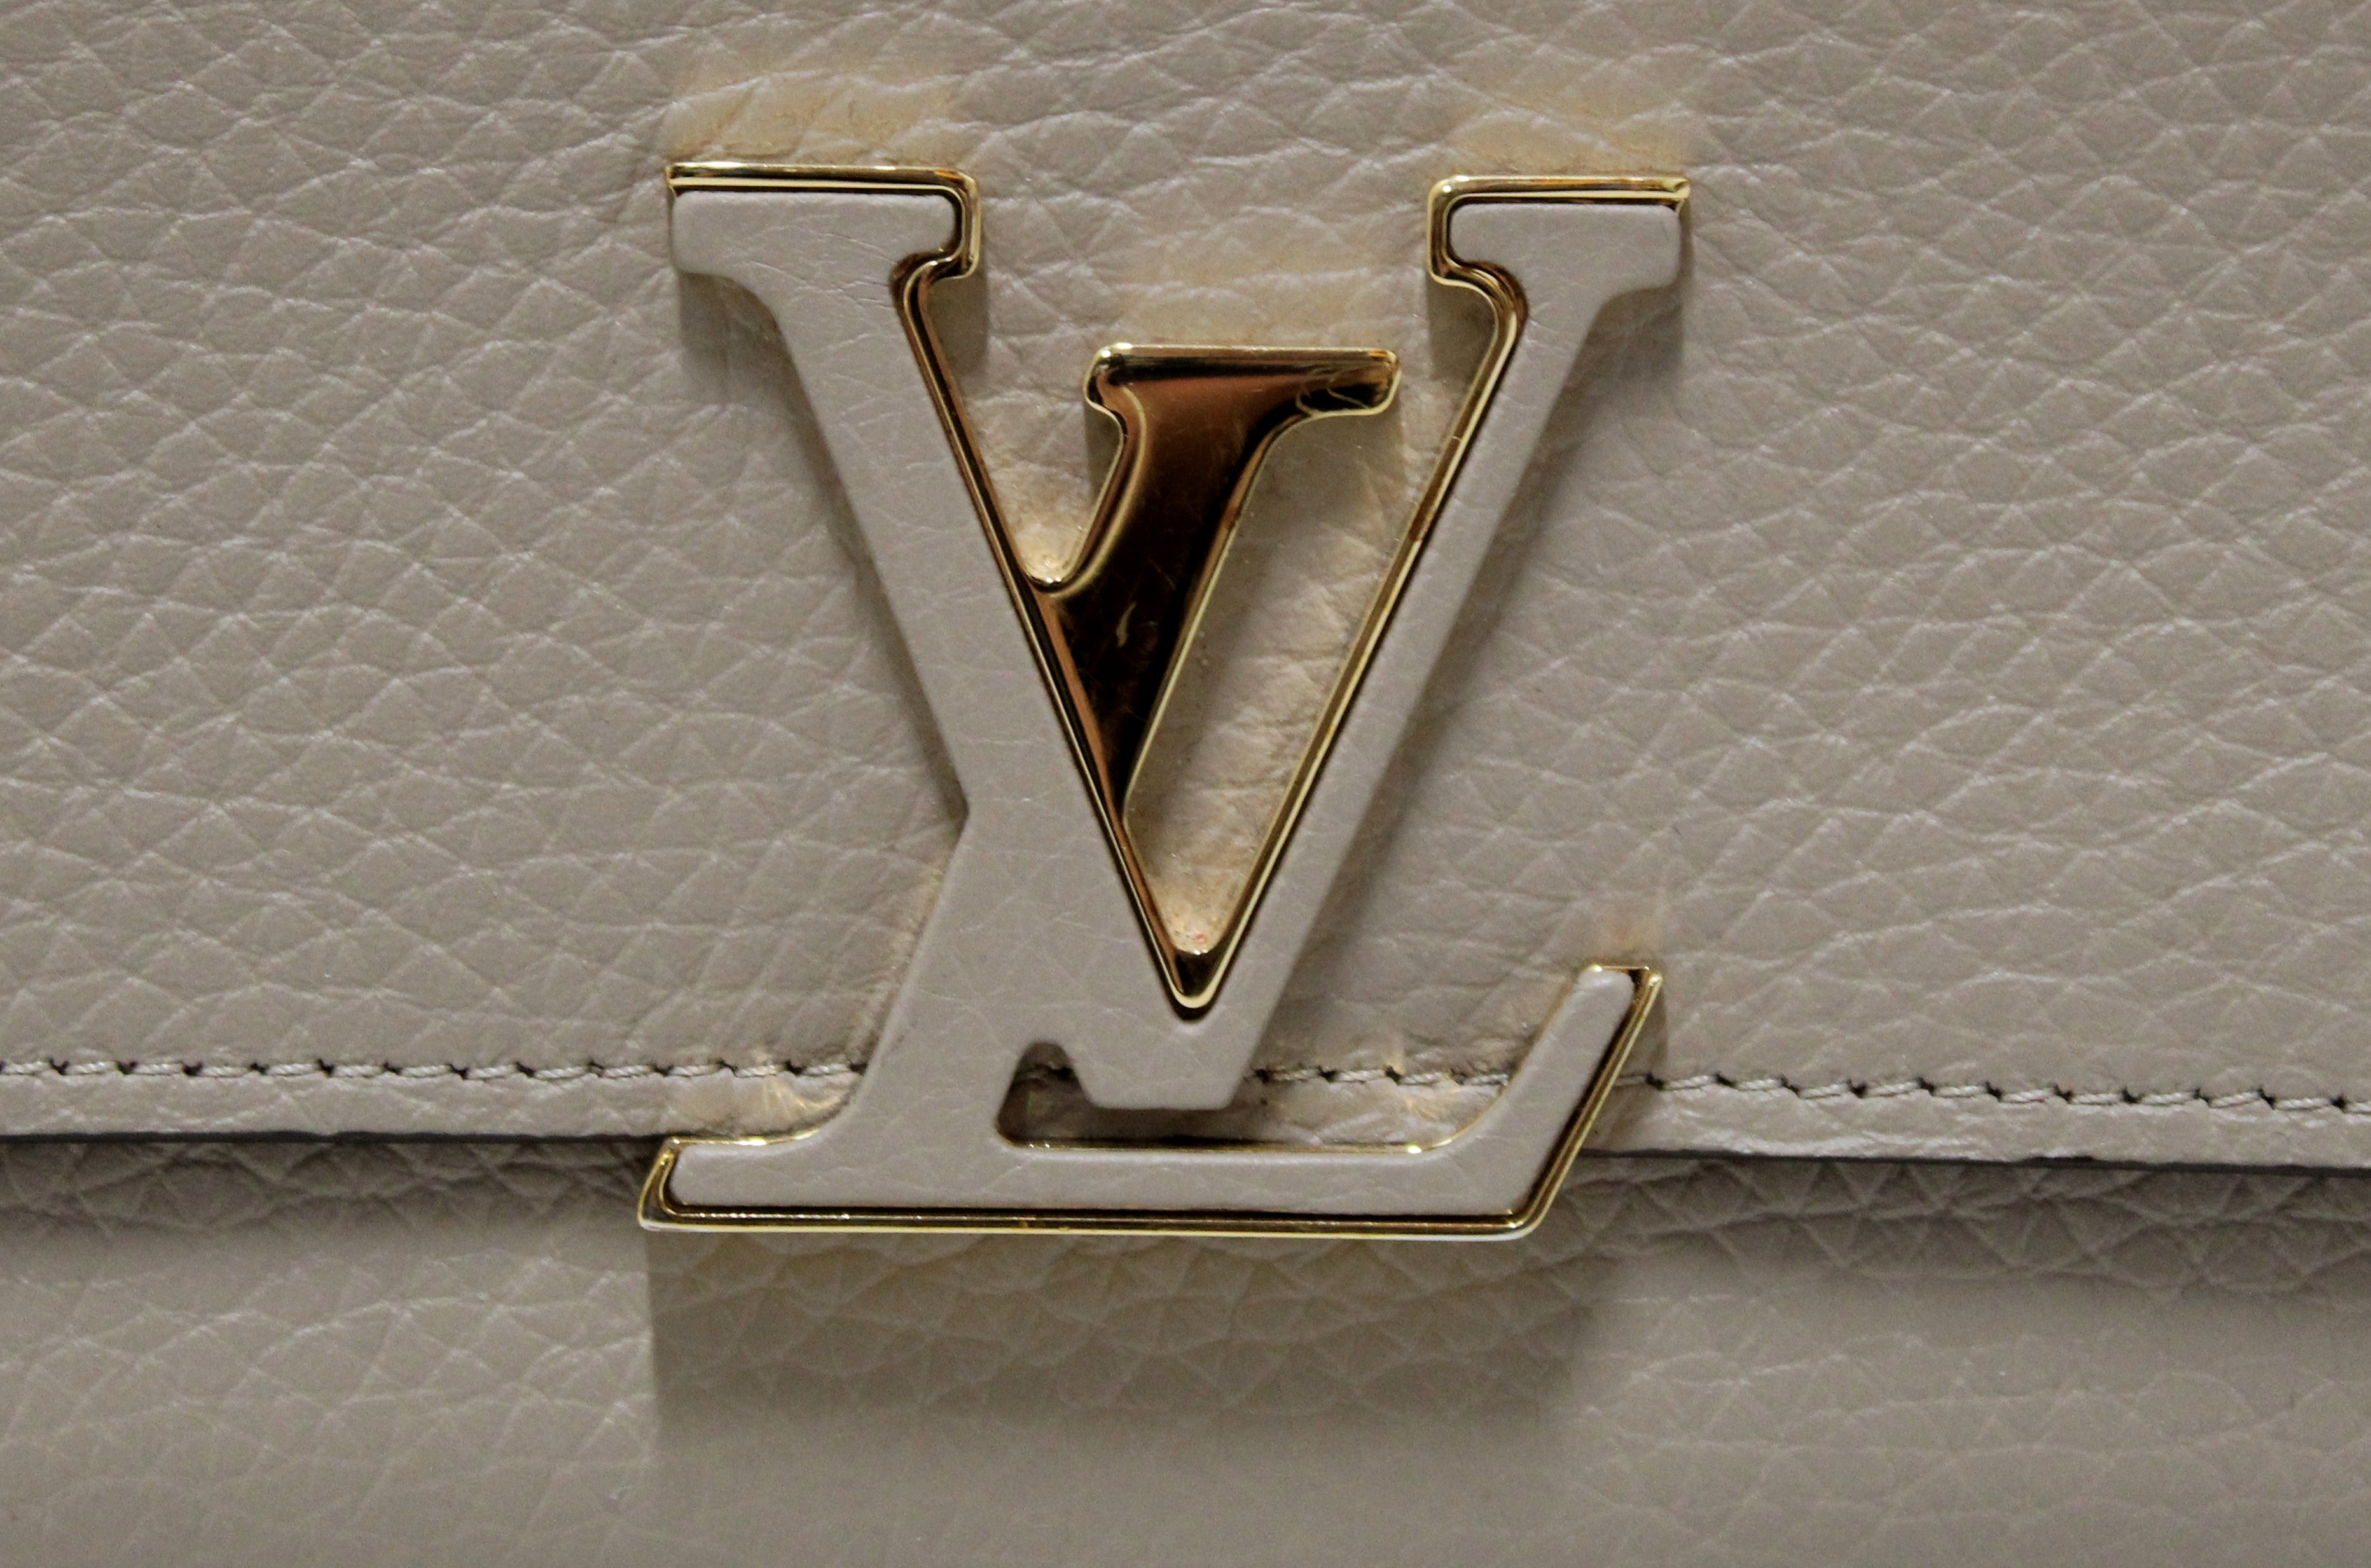 Authentic Louis Vuitton Galet Taurillon Leather Capucines Wallet – Paris  Station Shop